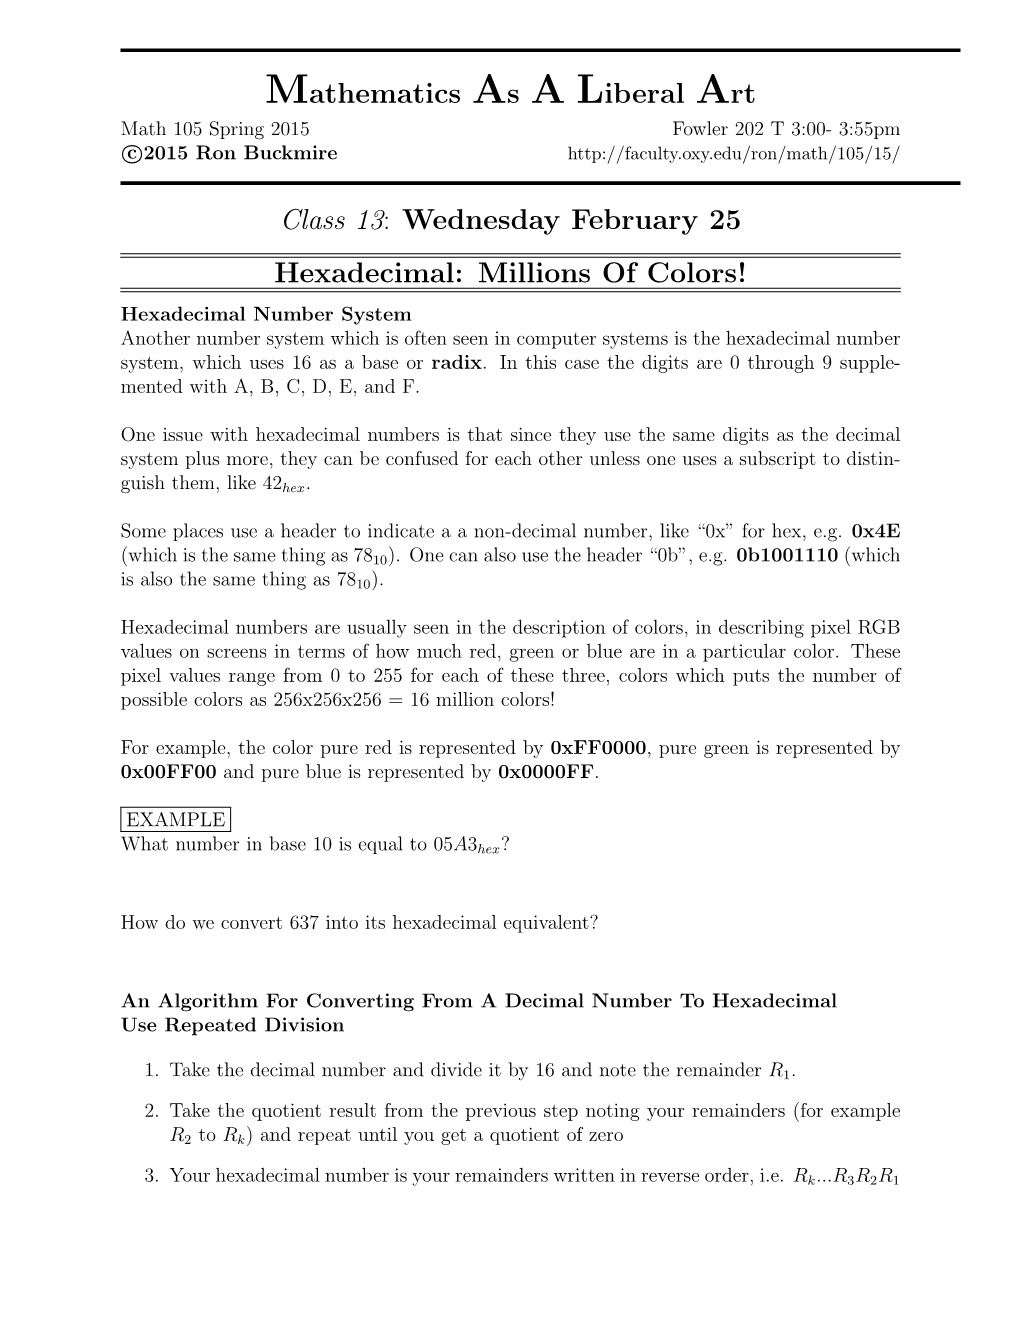 Mathematics As a Liberal Art Class 13: Wednesday February 25